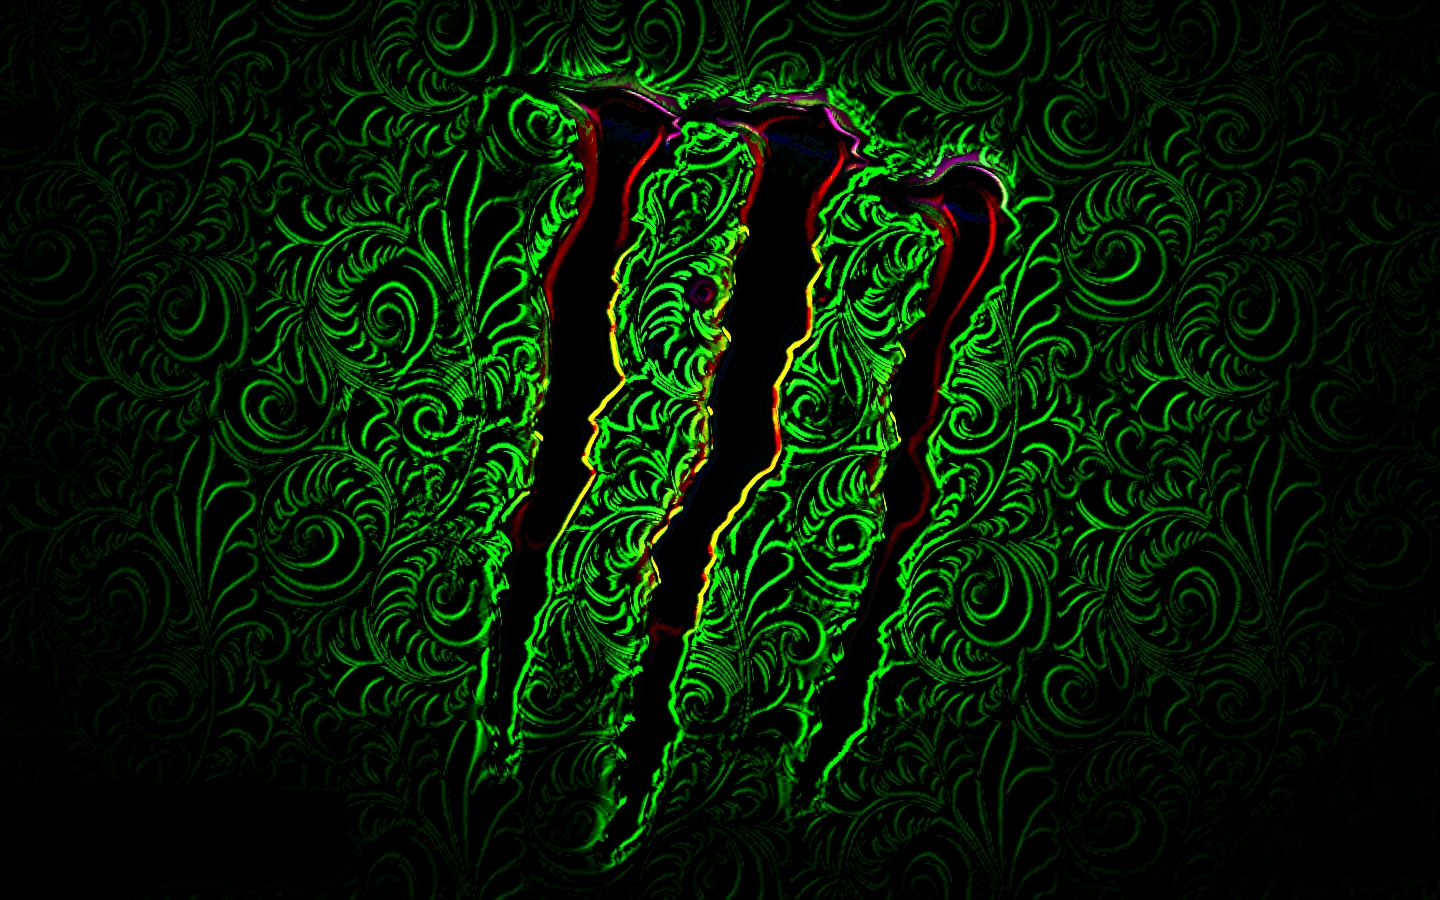 Wallpaper Monster Logo Wallpapers